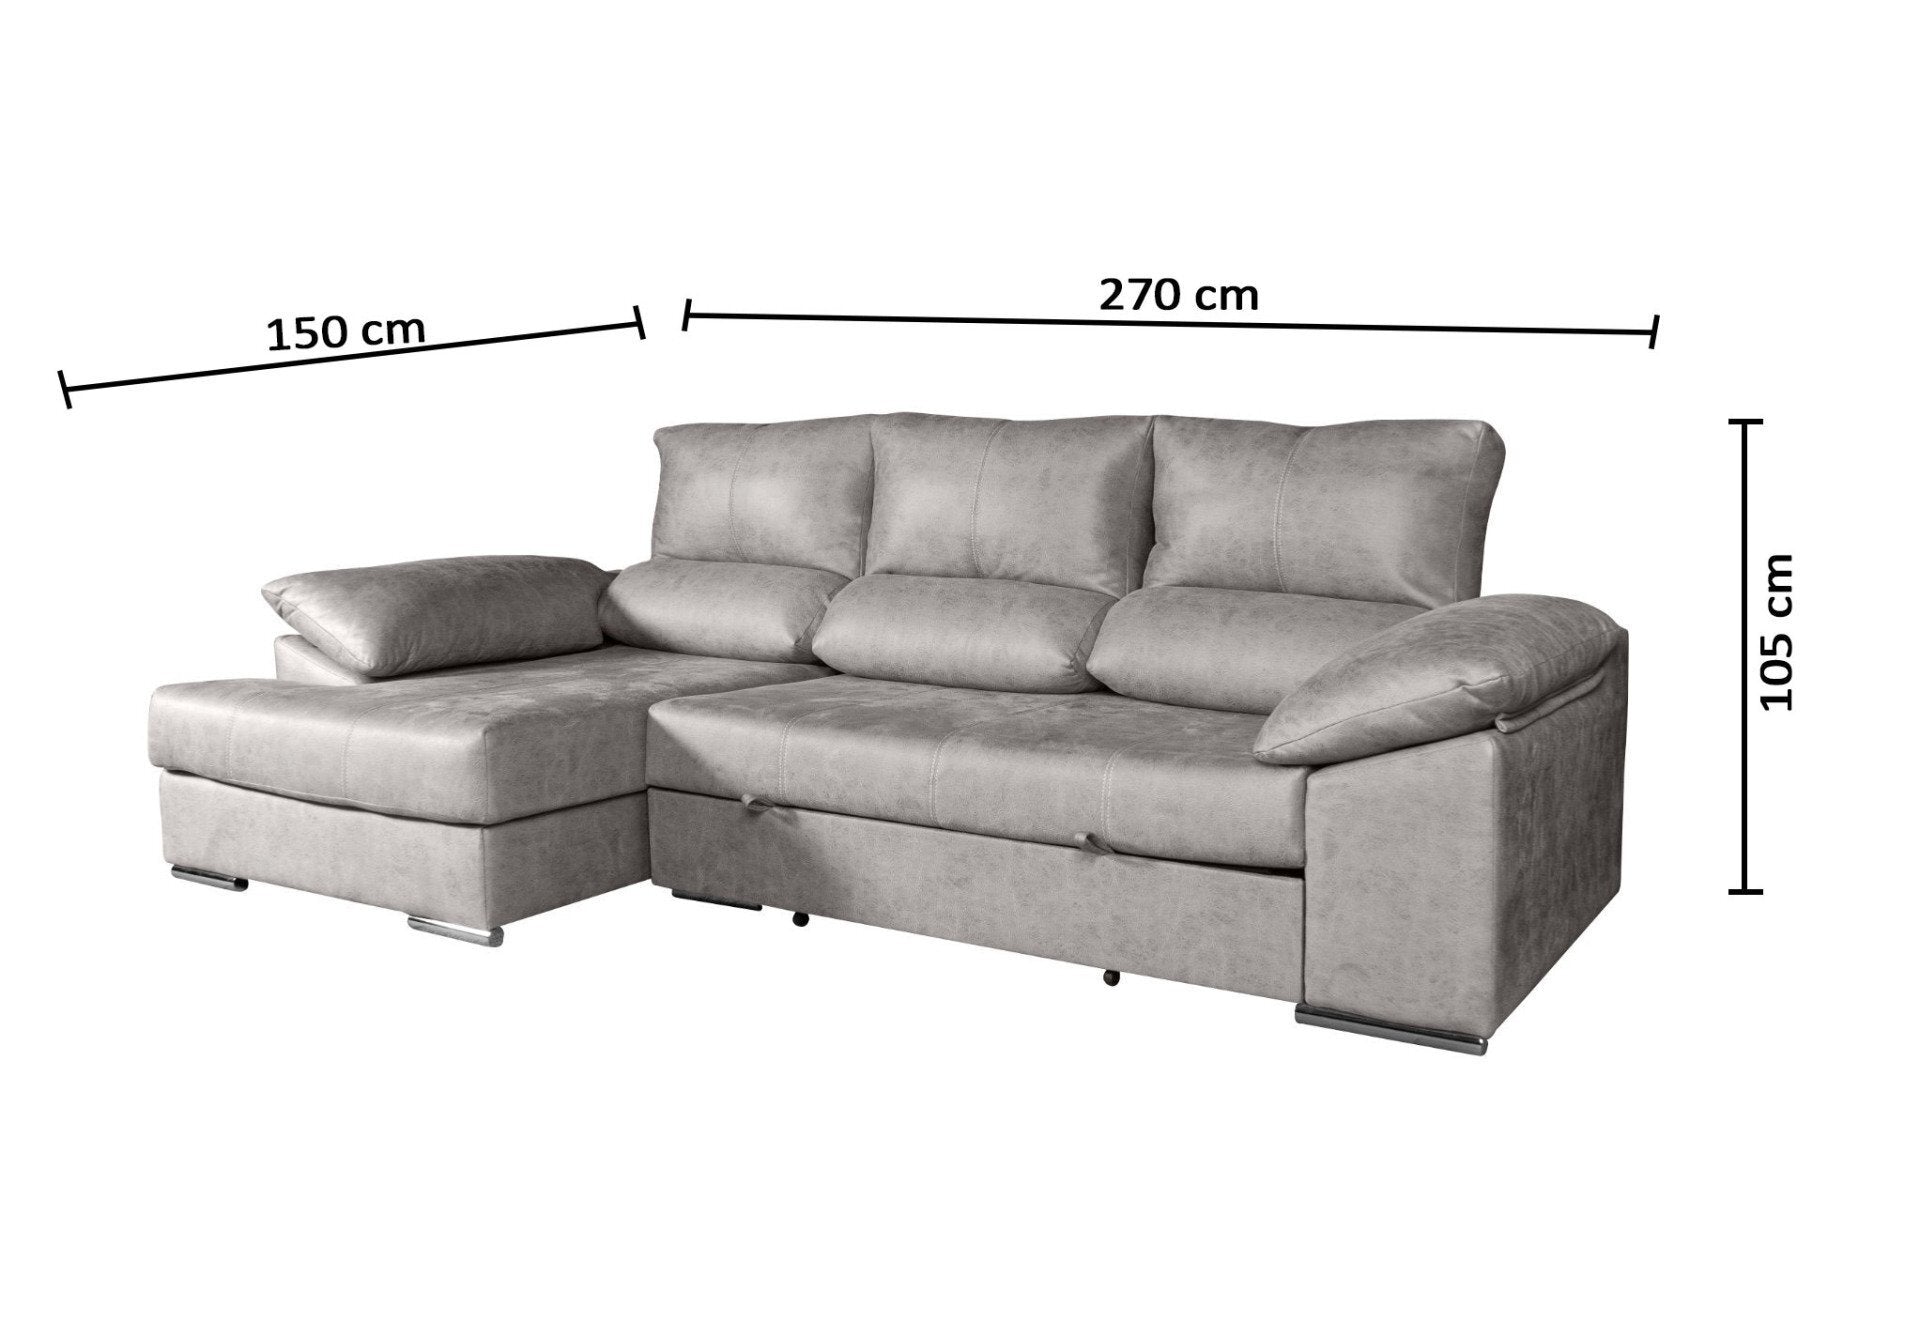 Sofa Cama Chaise Longue Daniel 270x150cm